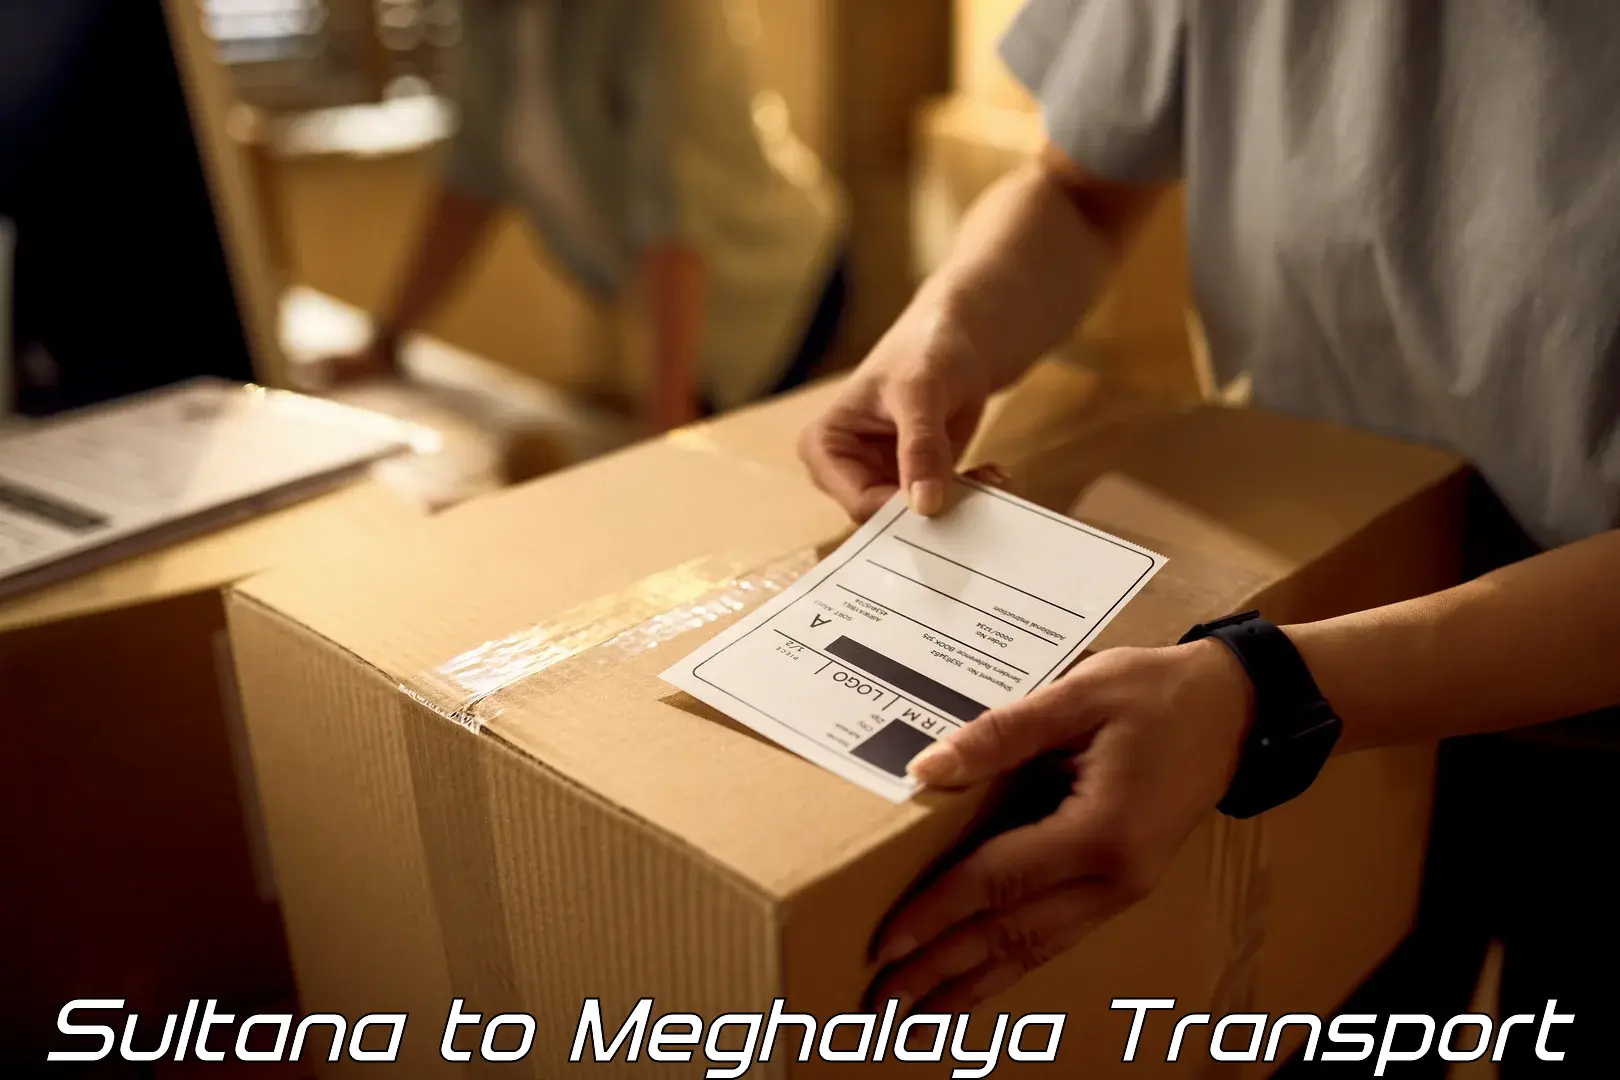 Pick up transport service Sultana to Meghalaya